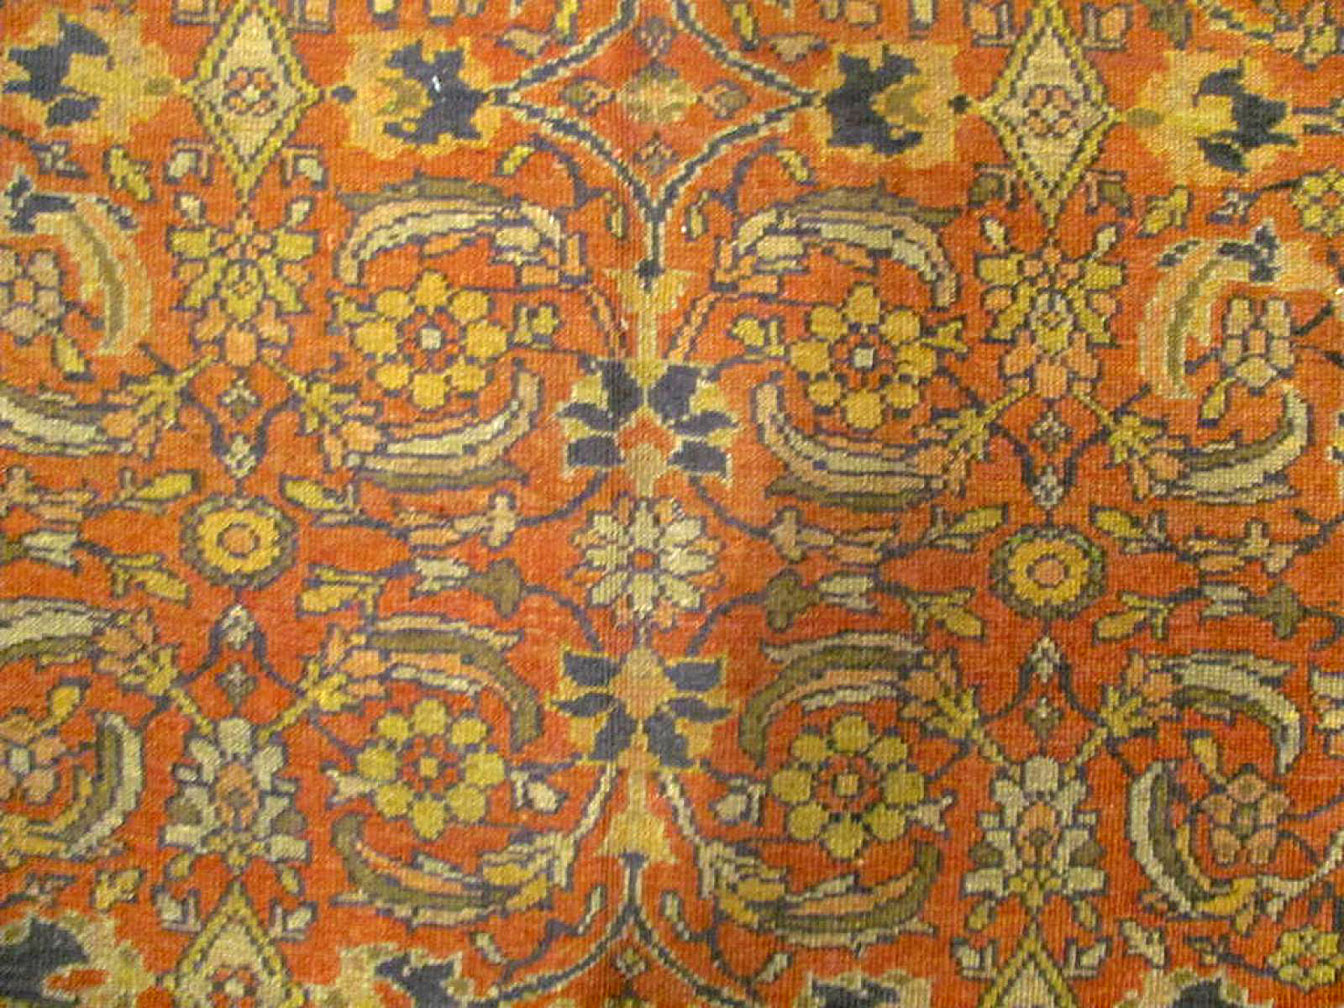 Antique mahal Carpet - # 52070